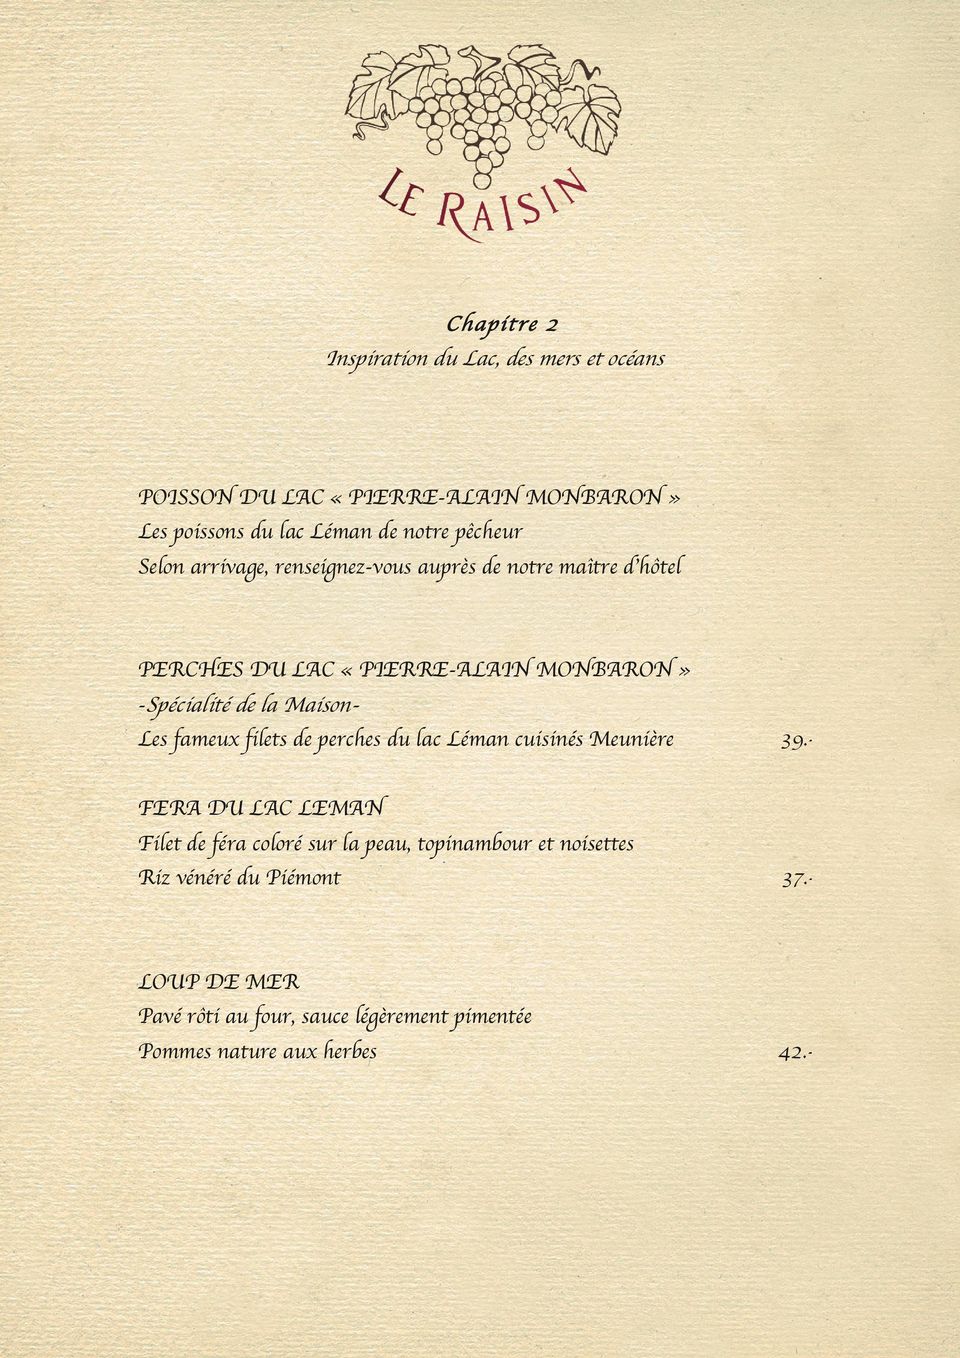 topinambour et noisettes Riz vénéré du Piémont 37.